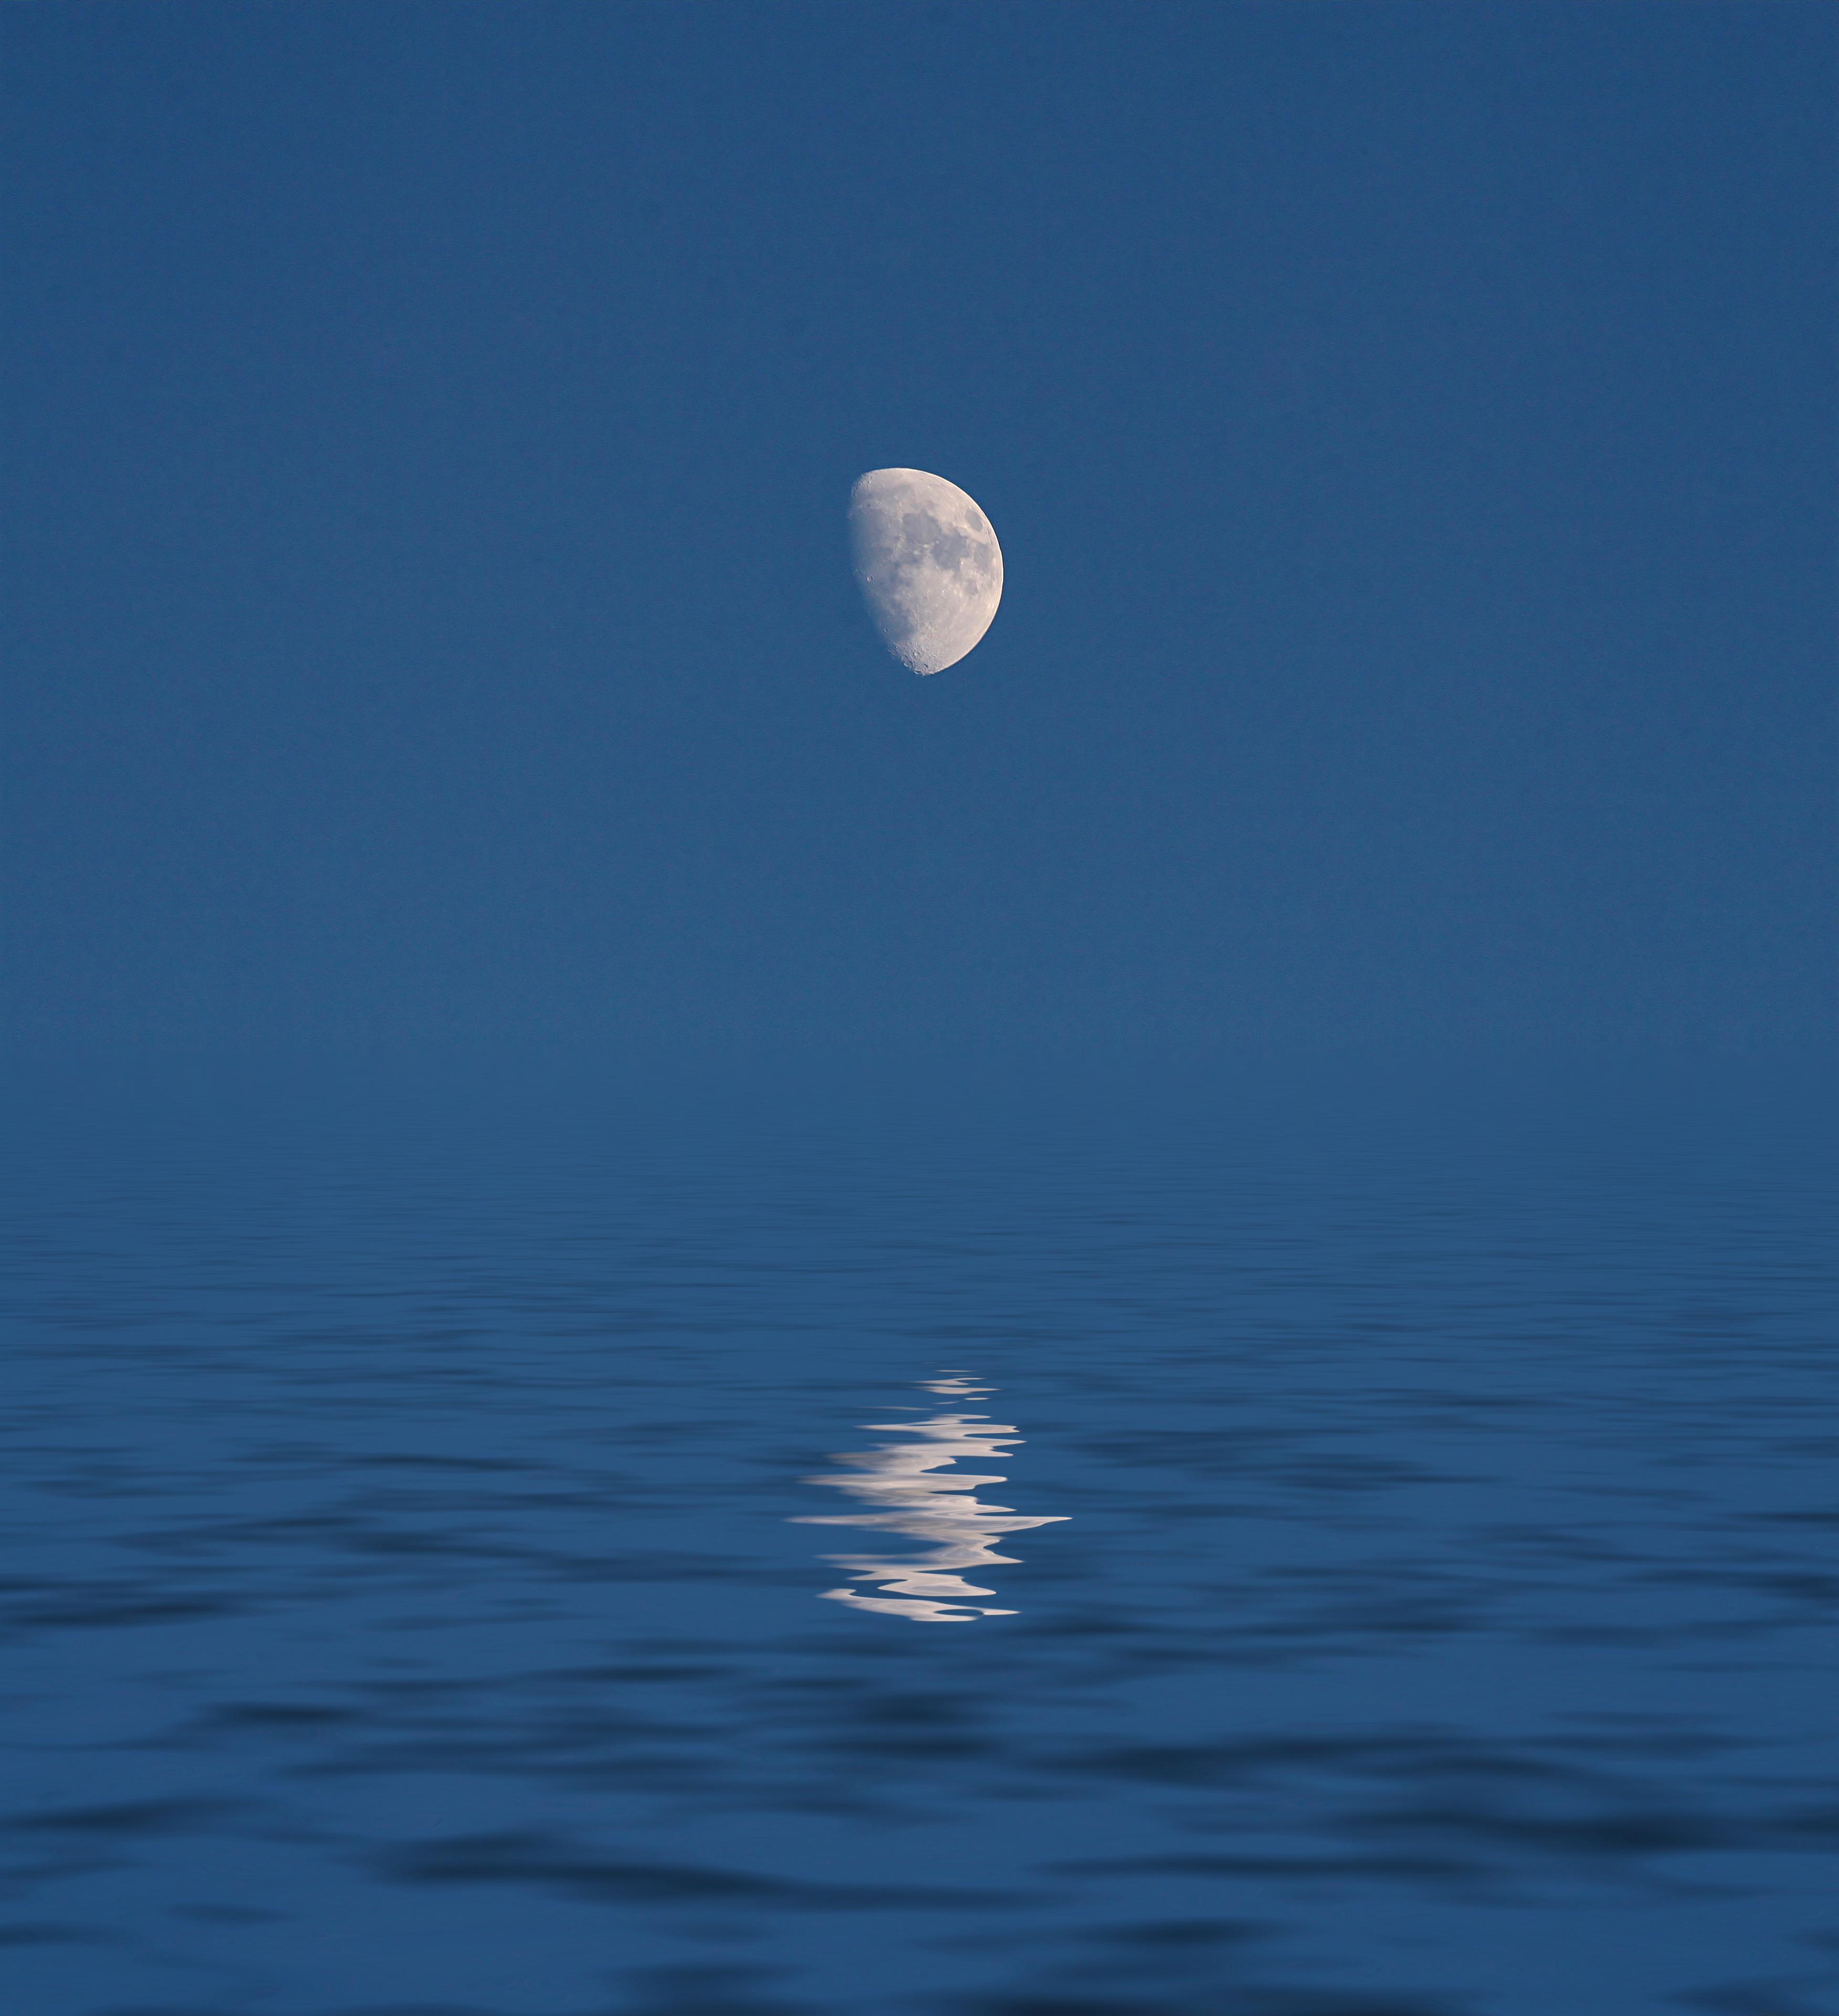 フリー画像 自然風景 海の風景 月の風景 青色 ブルー フリー素材 画像素材なら 無料 フリー写真素材のフリーフォト